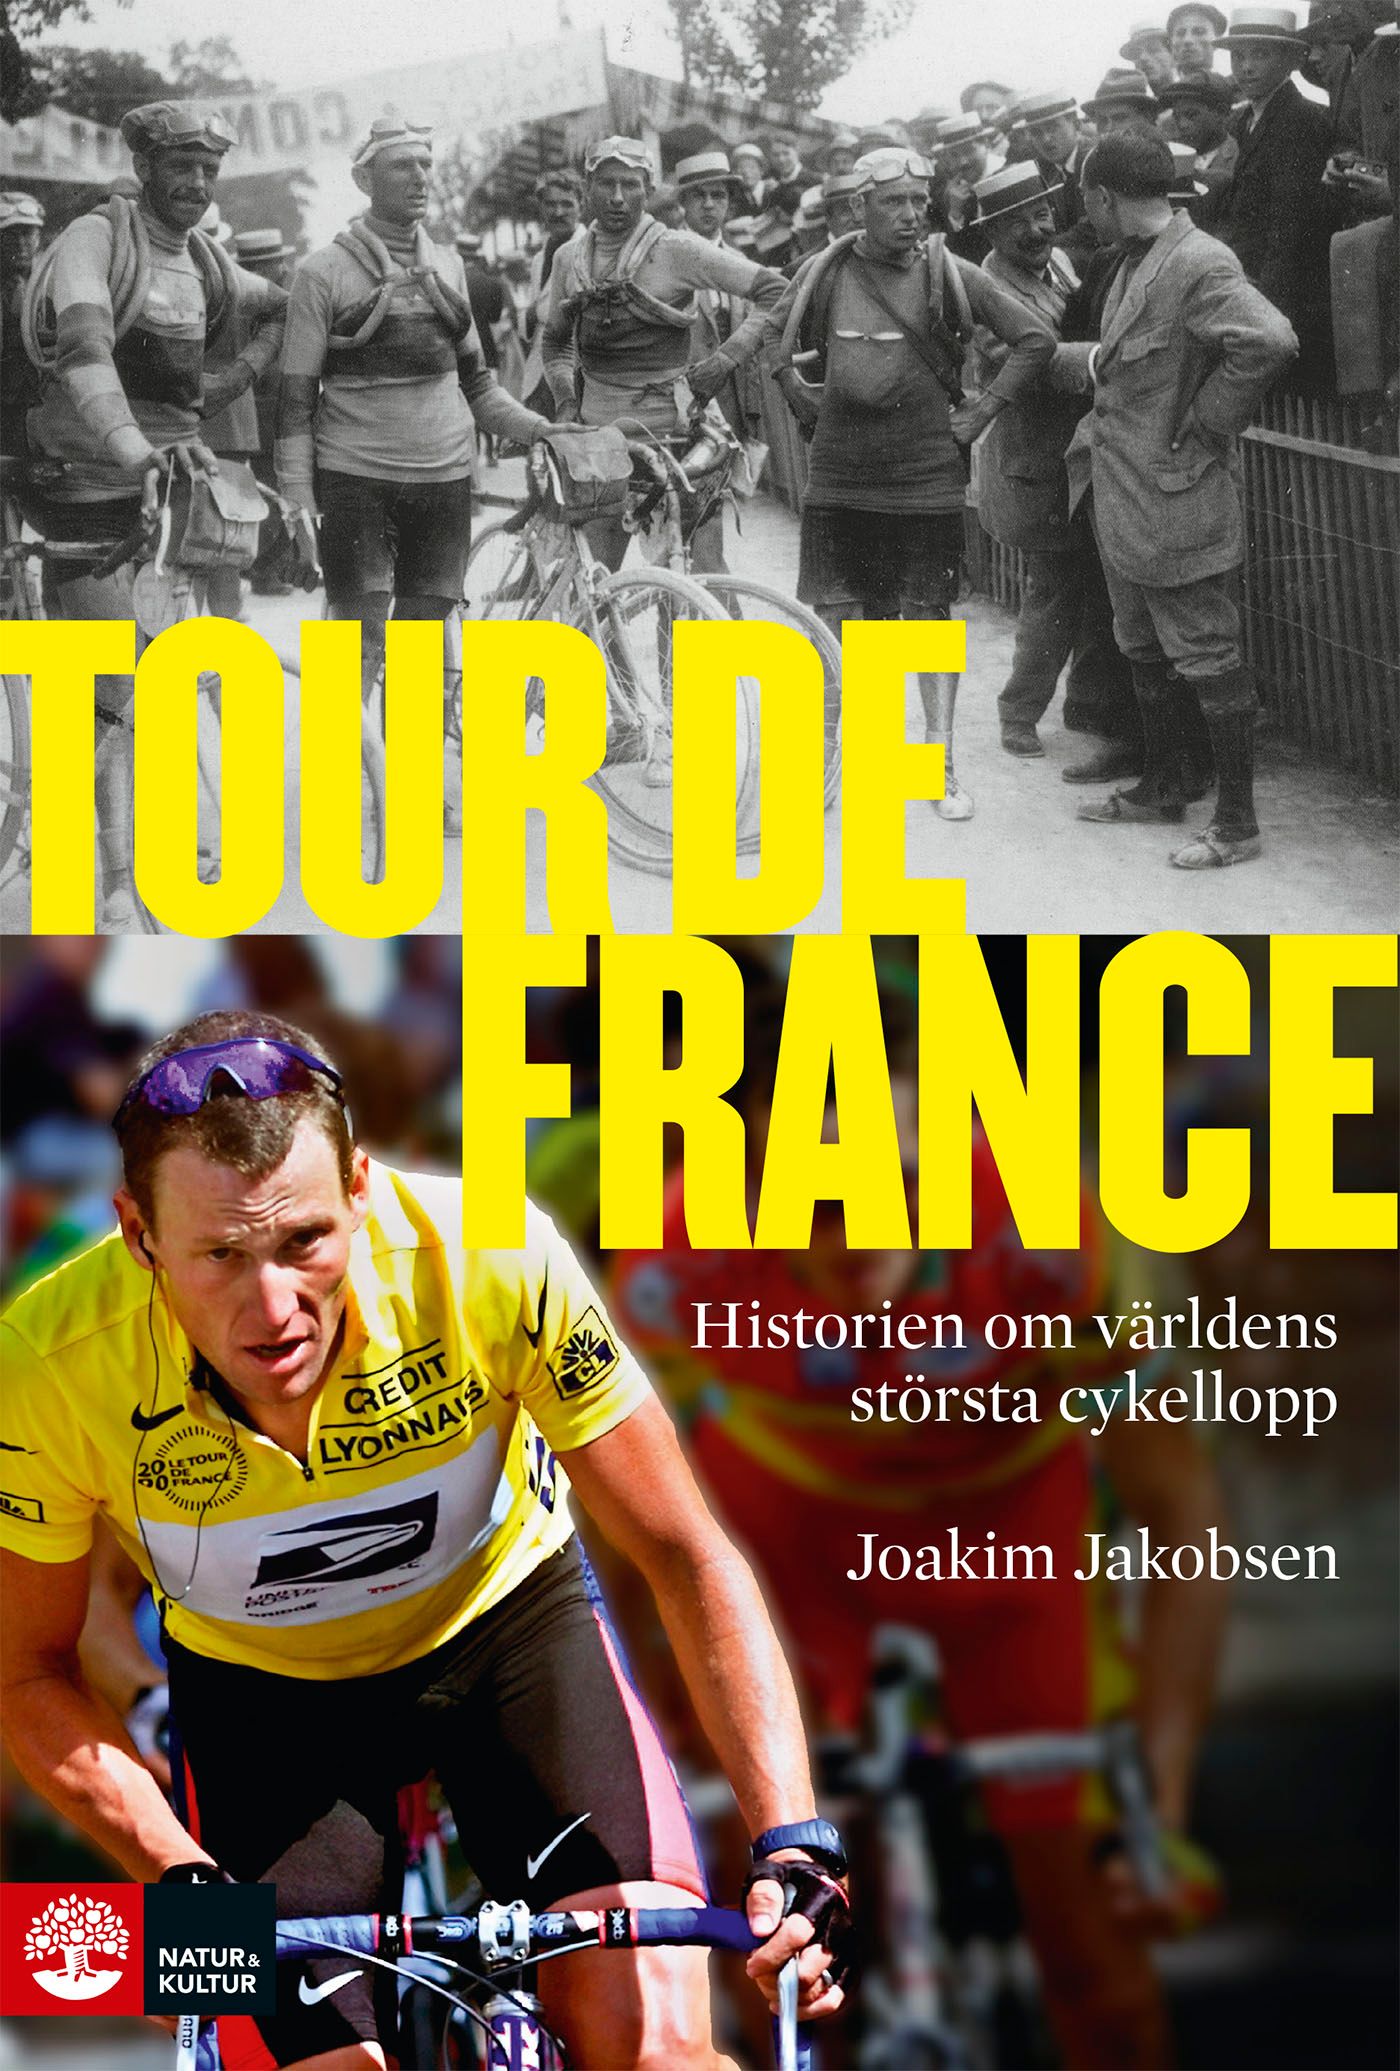 Tour de France: Historien om världens största cykellopp, e-bok av Joakim Jakobsen